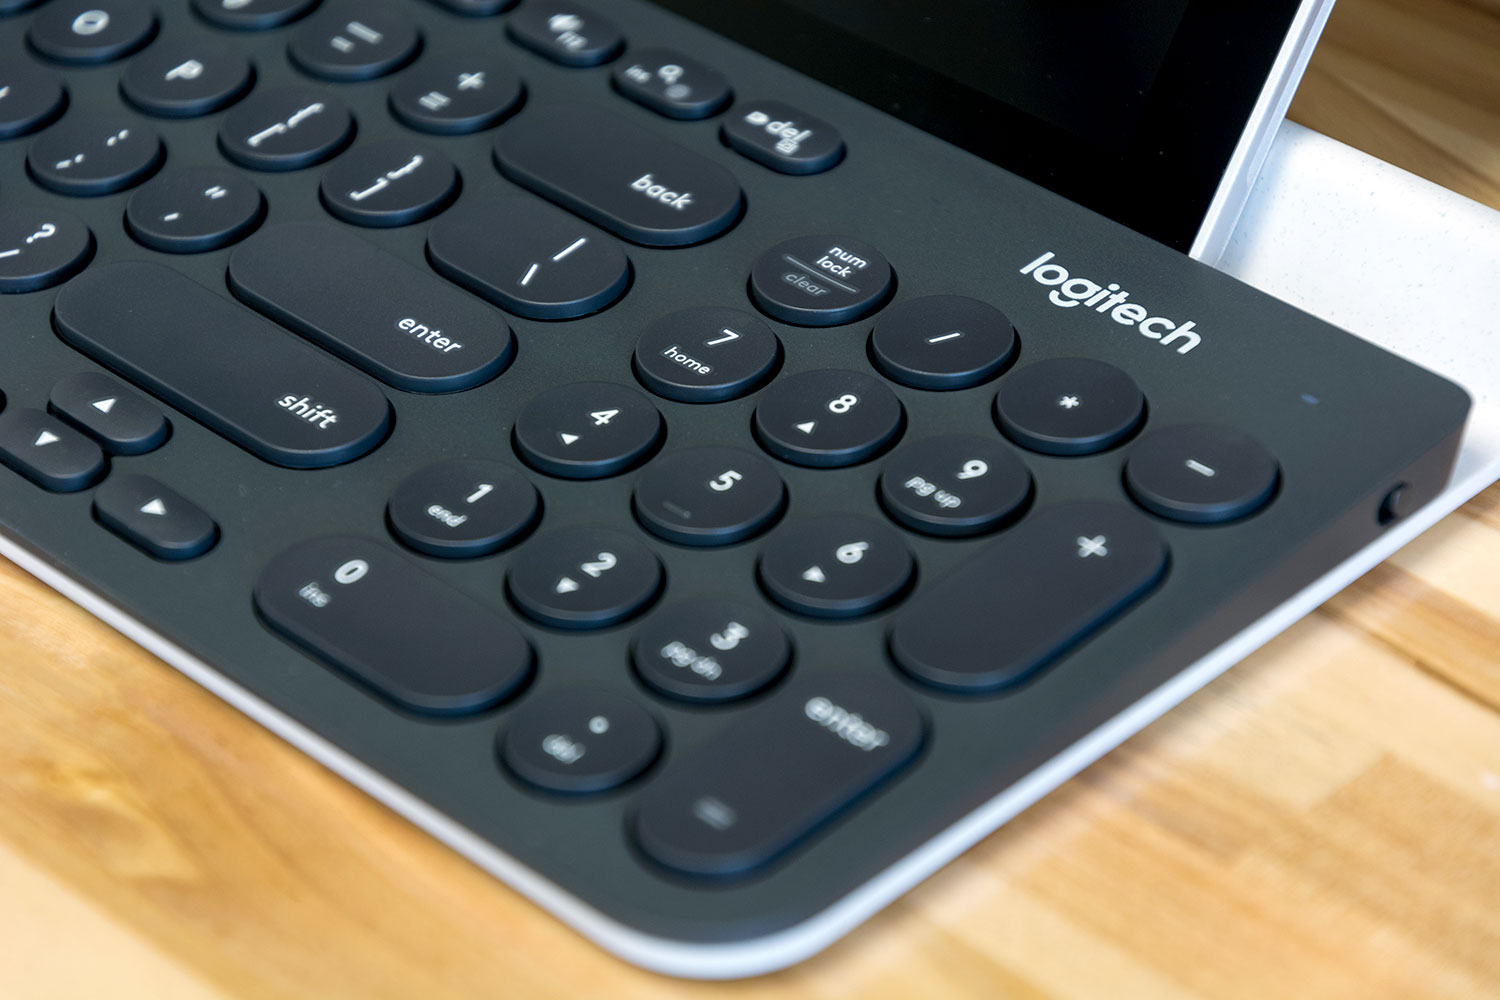 Logitech K780 Multi-Device Wireless Keyboard Review Digital Trends